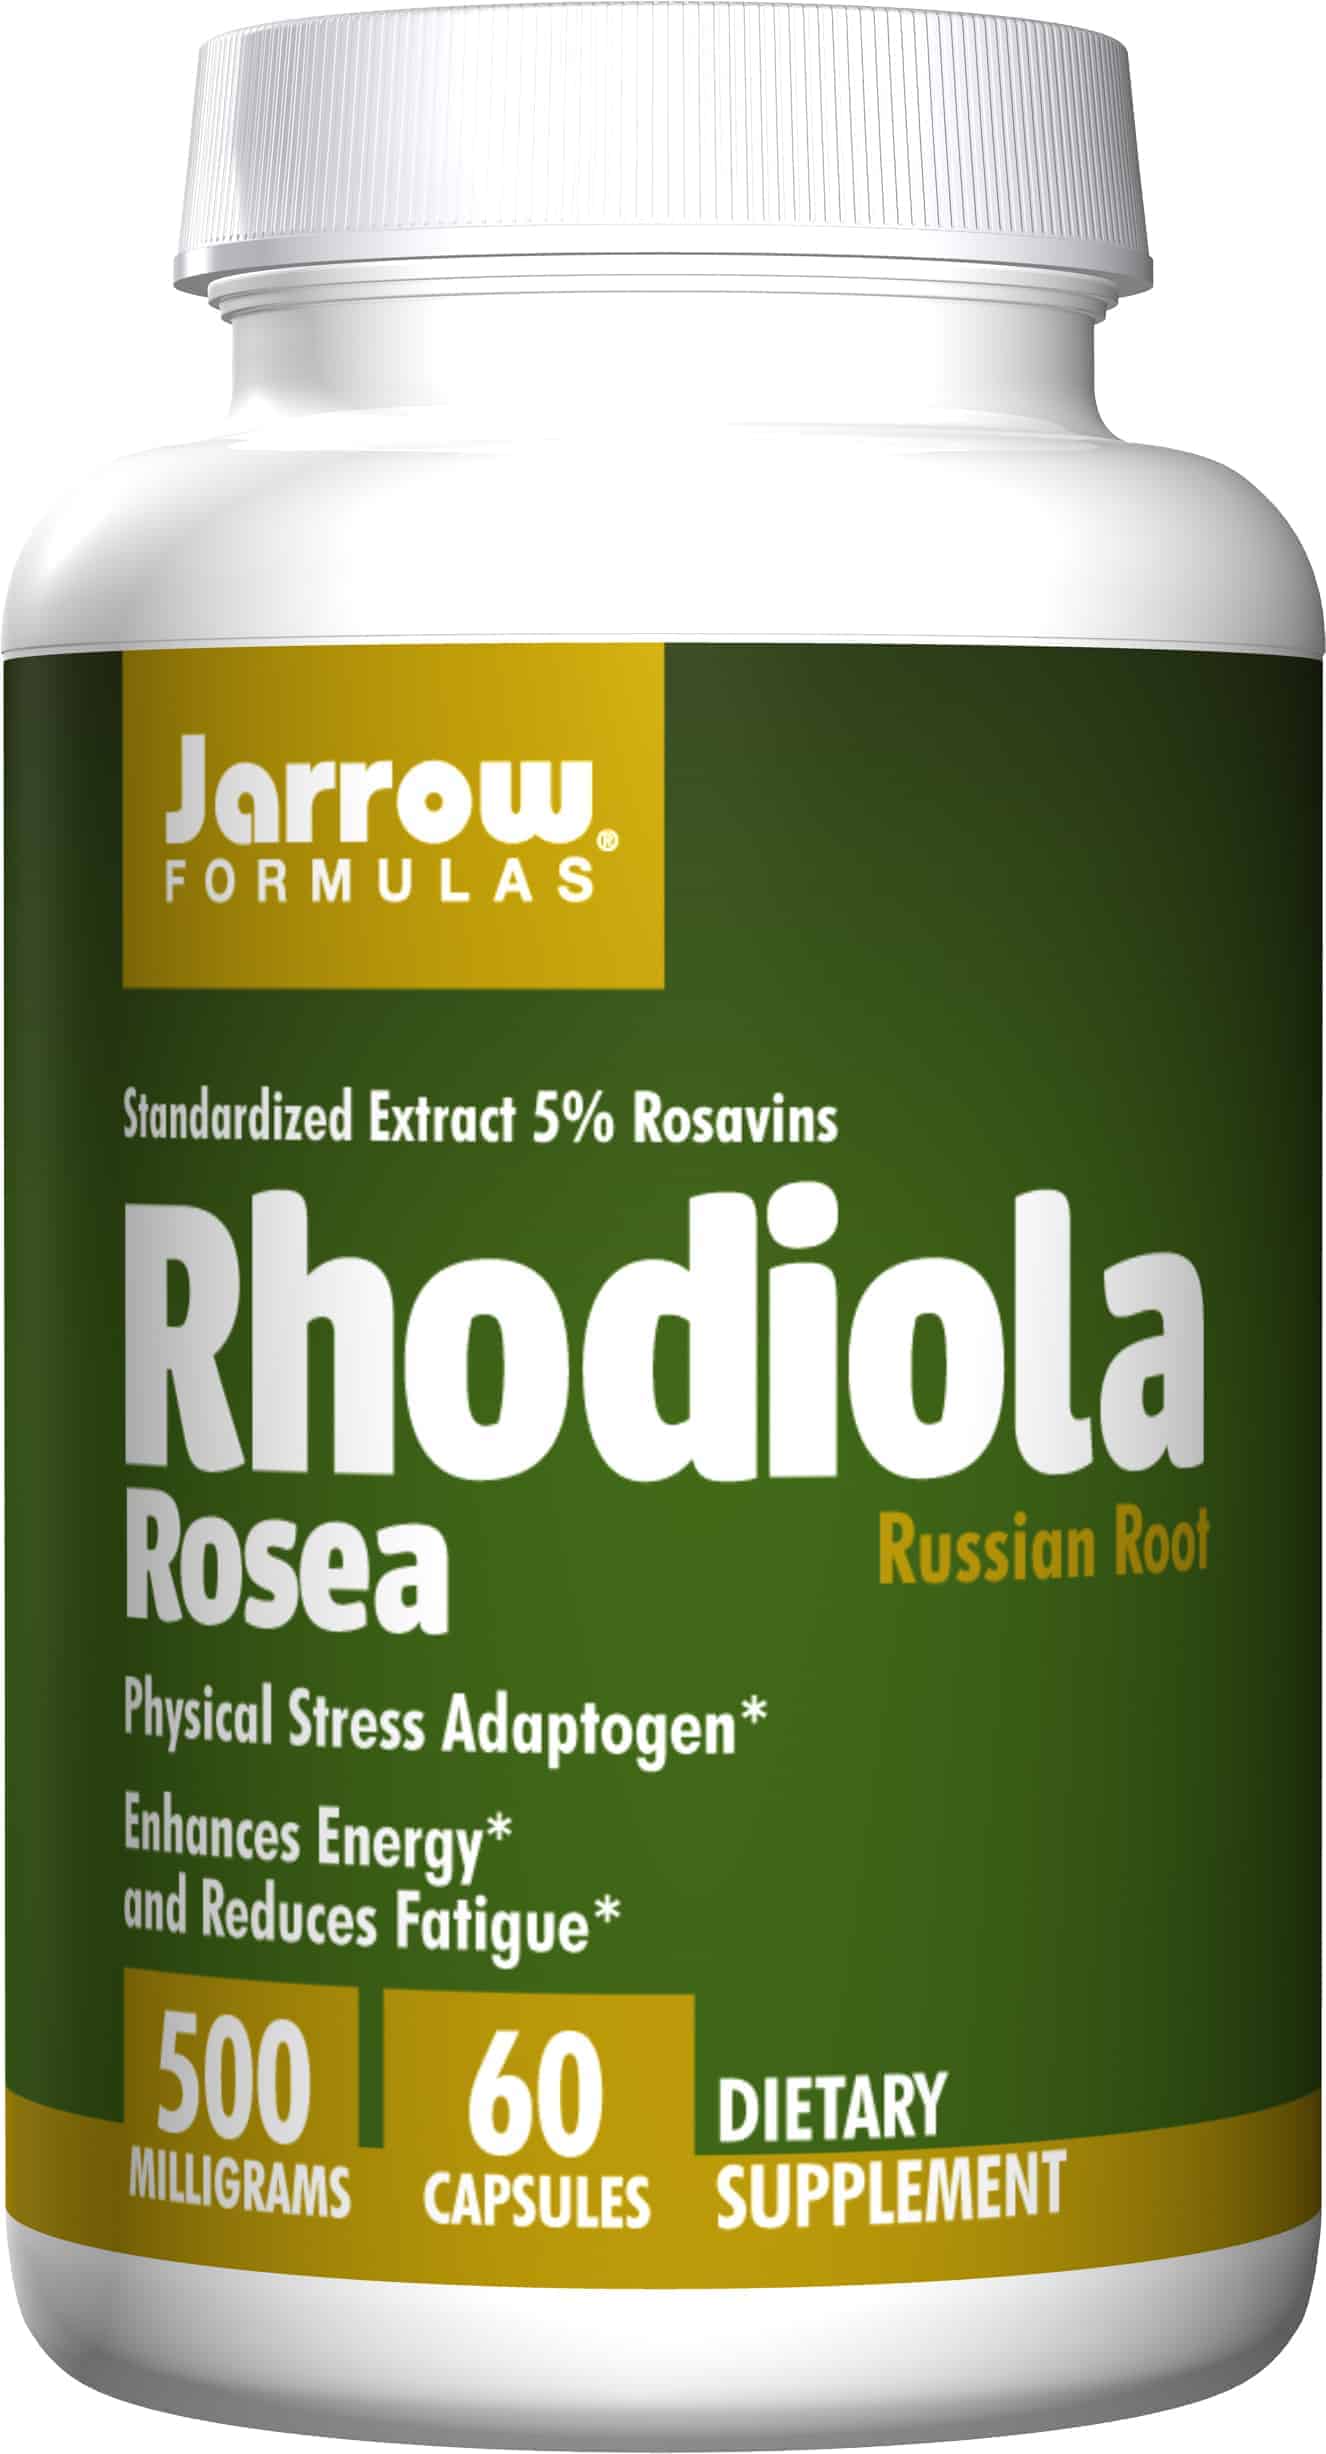 Różeniec górski (Rhodiola Rosea) - właściwości i działanie